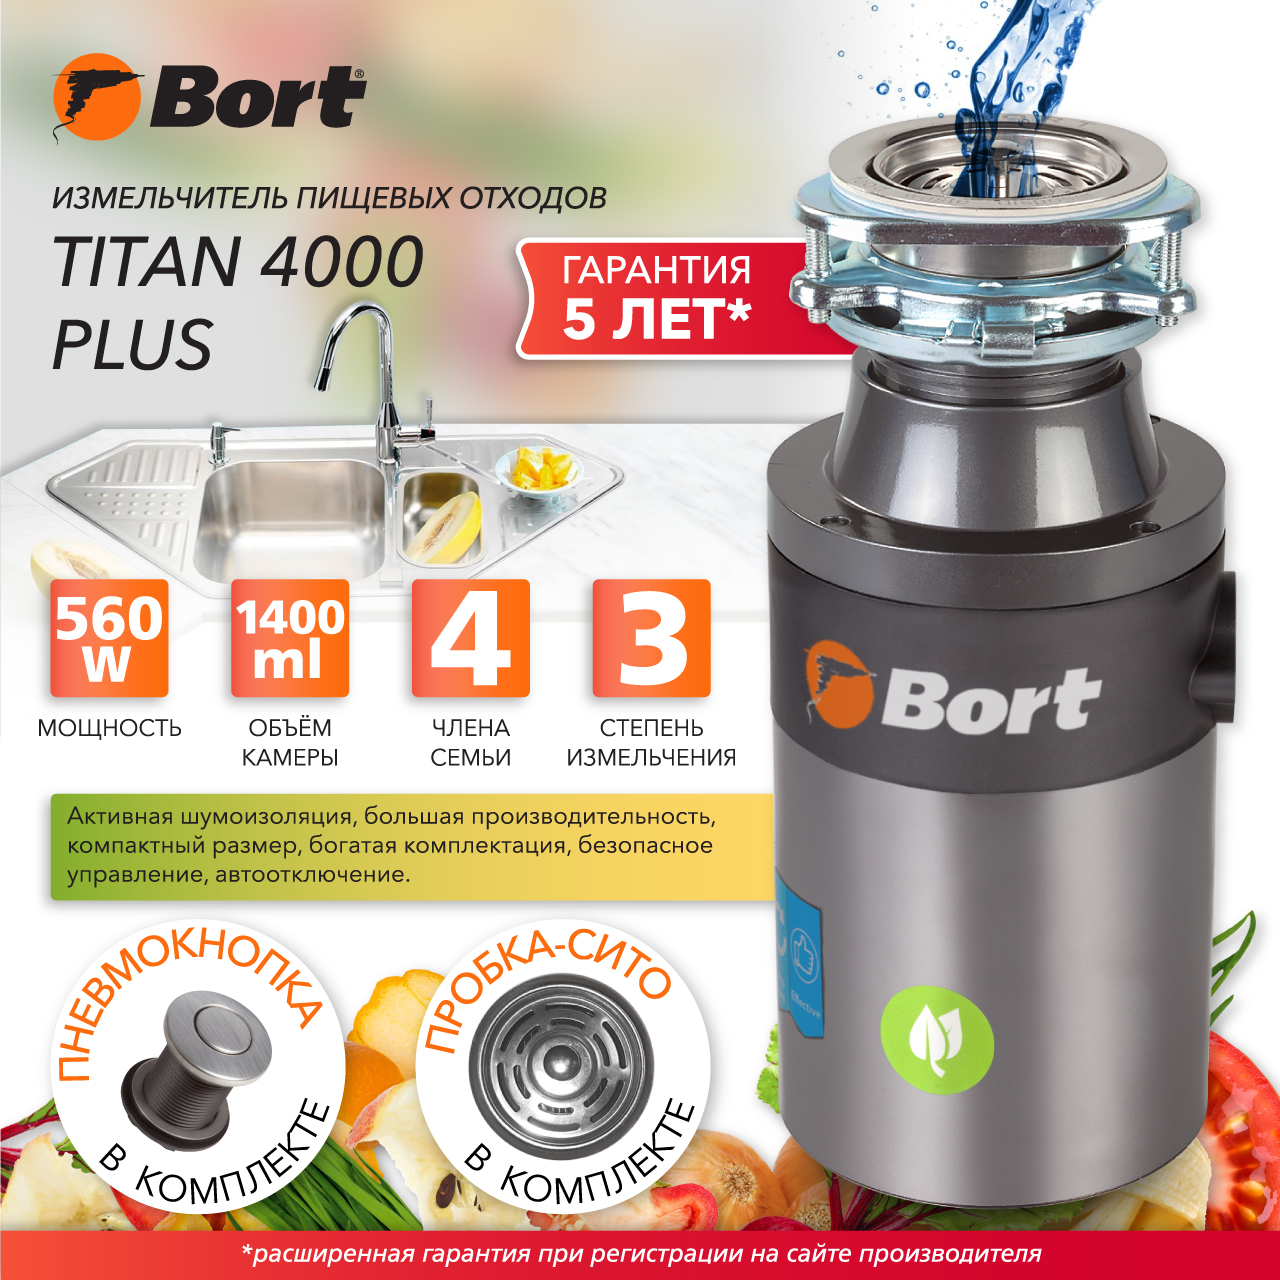  пищевых отходов Bort TITAN 4000 PLUS (91275776 .